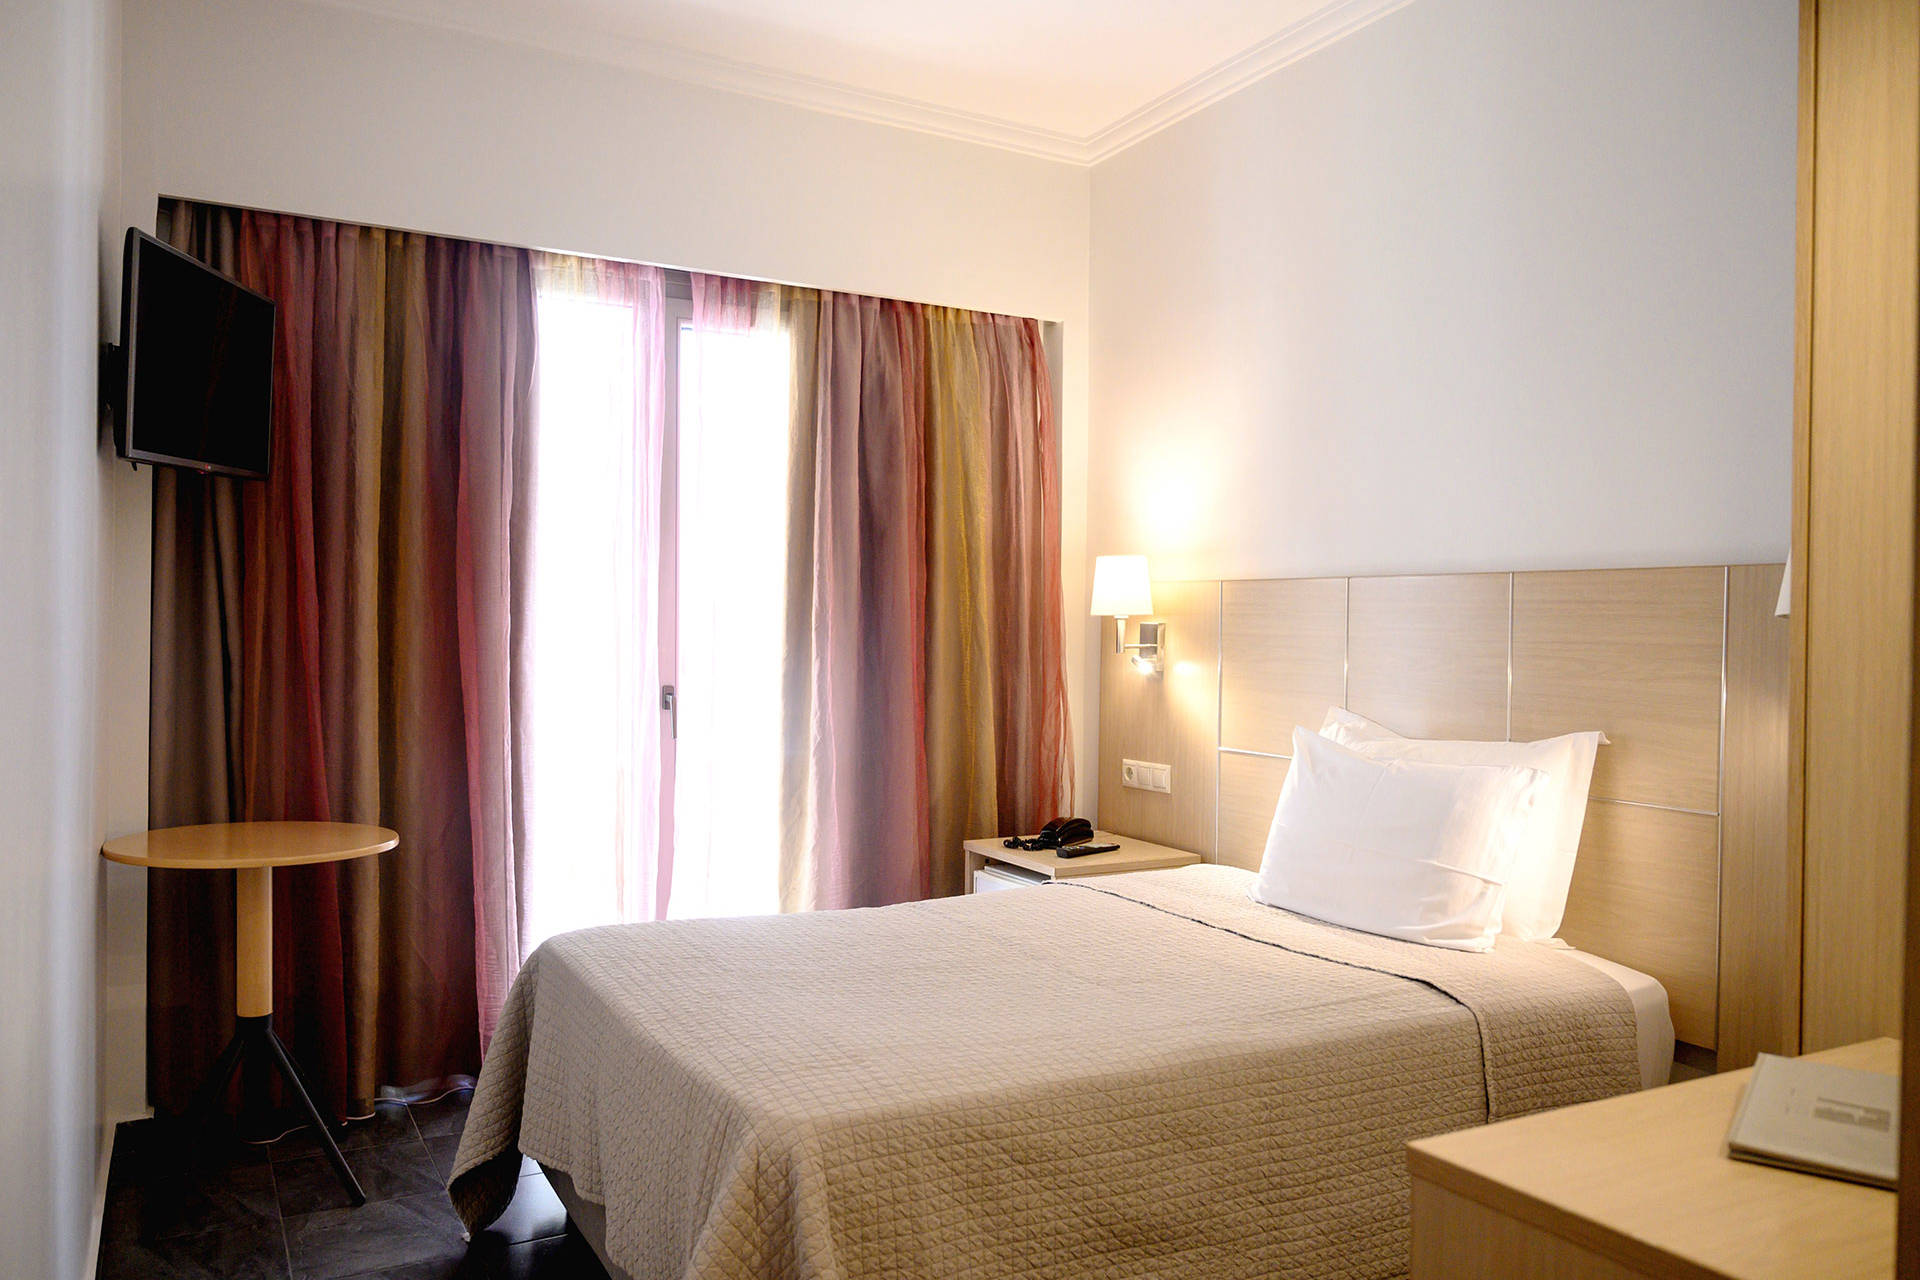 
Ξενοδοχείο El Greco Θεσσαλονίκη Μονόκλινο Δωμάτιο Υπνοδωμάτιο